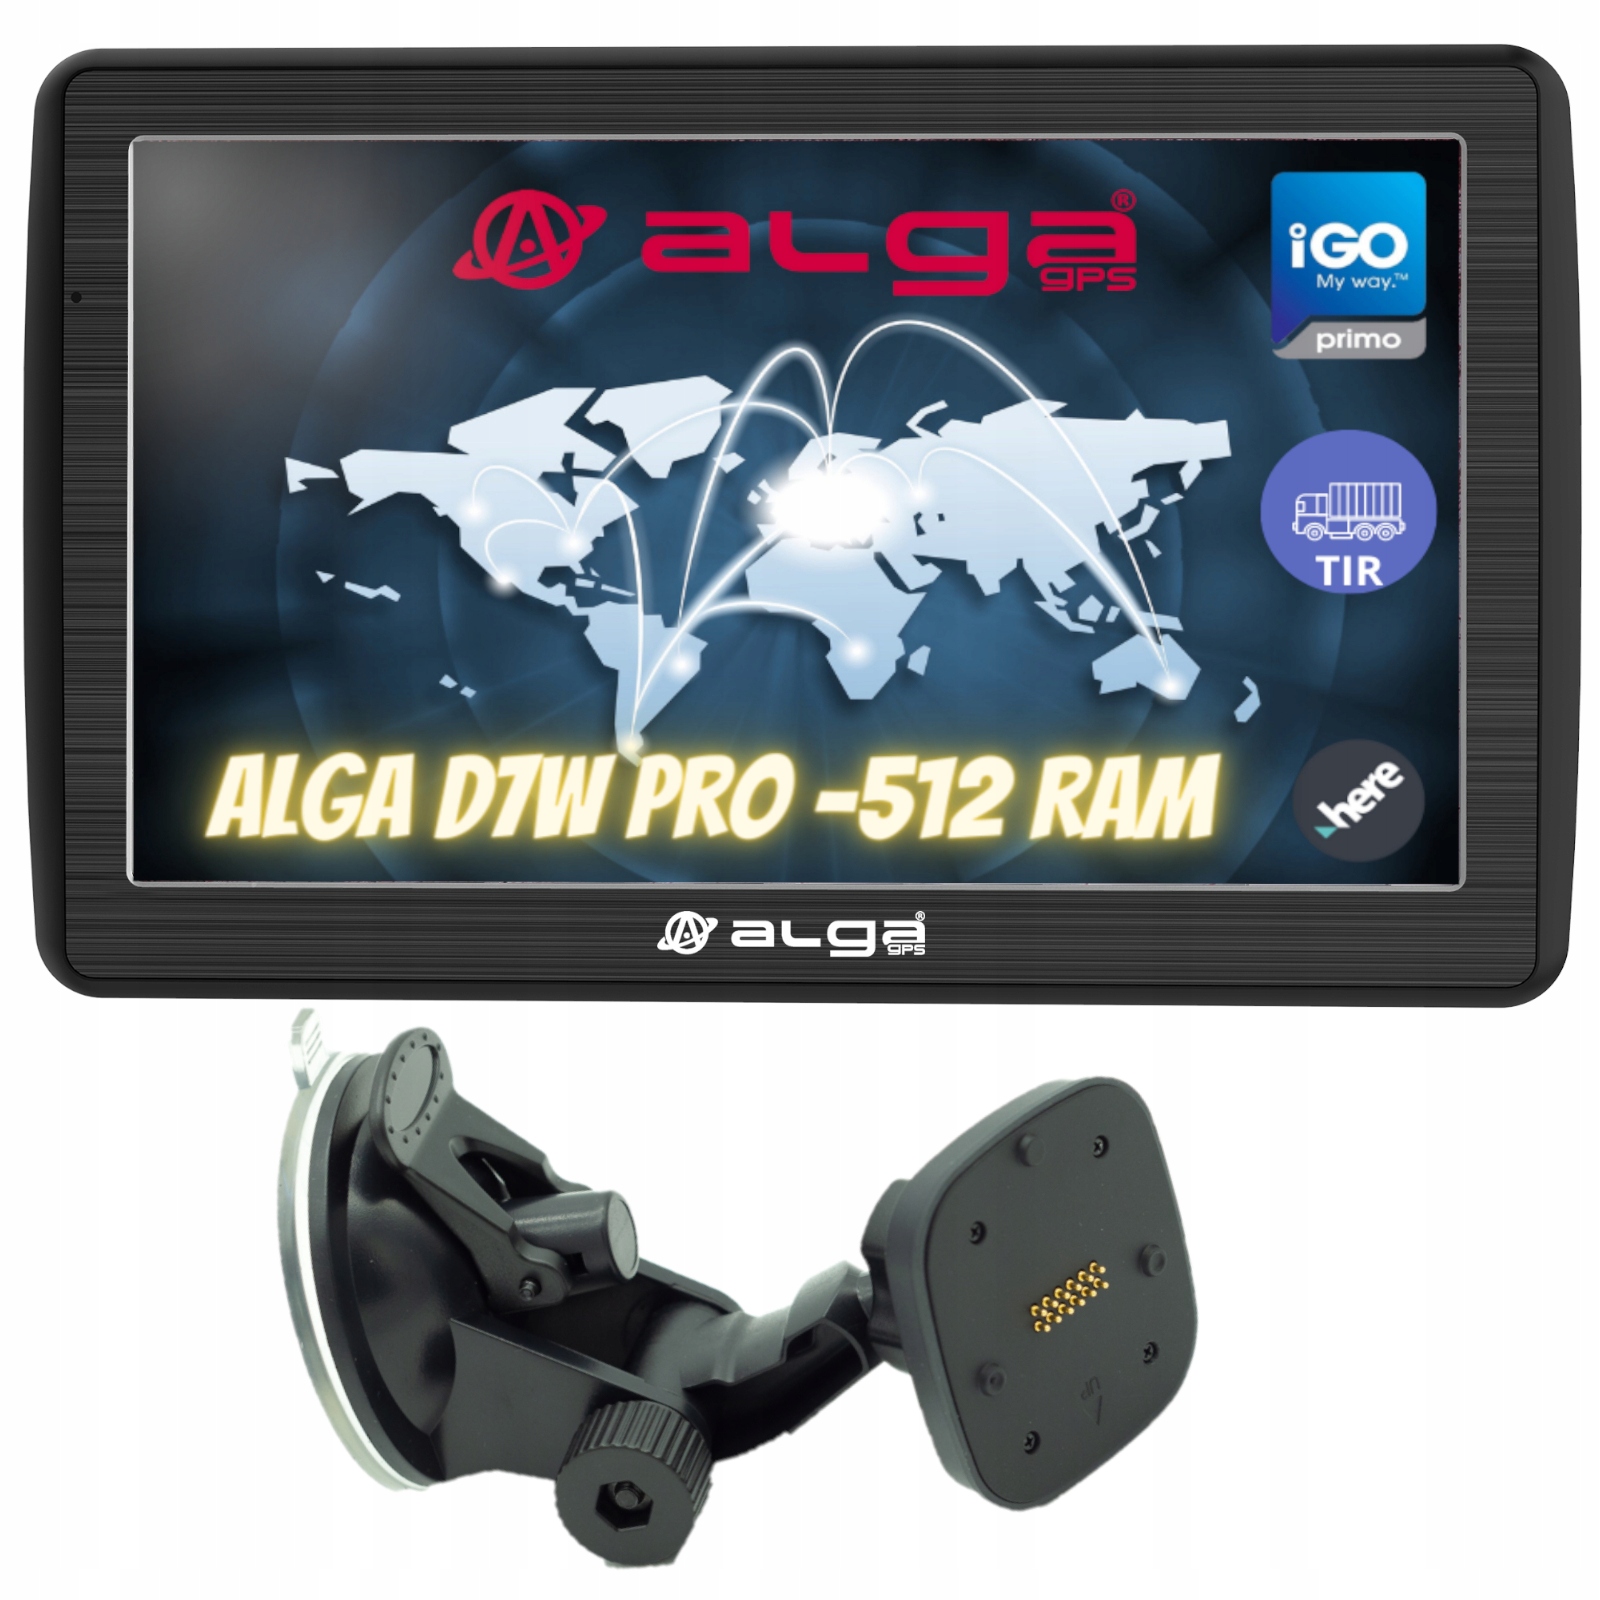 ALGA D7W PRO-512 RAM. iGO Primo TIR, Nawigacja GPS